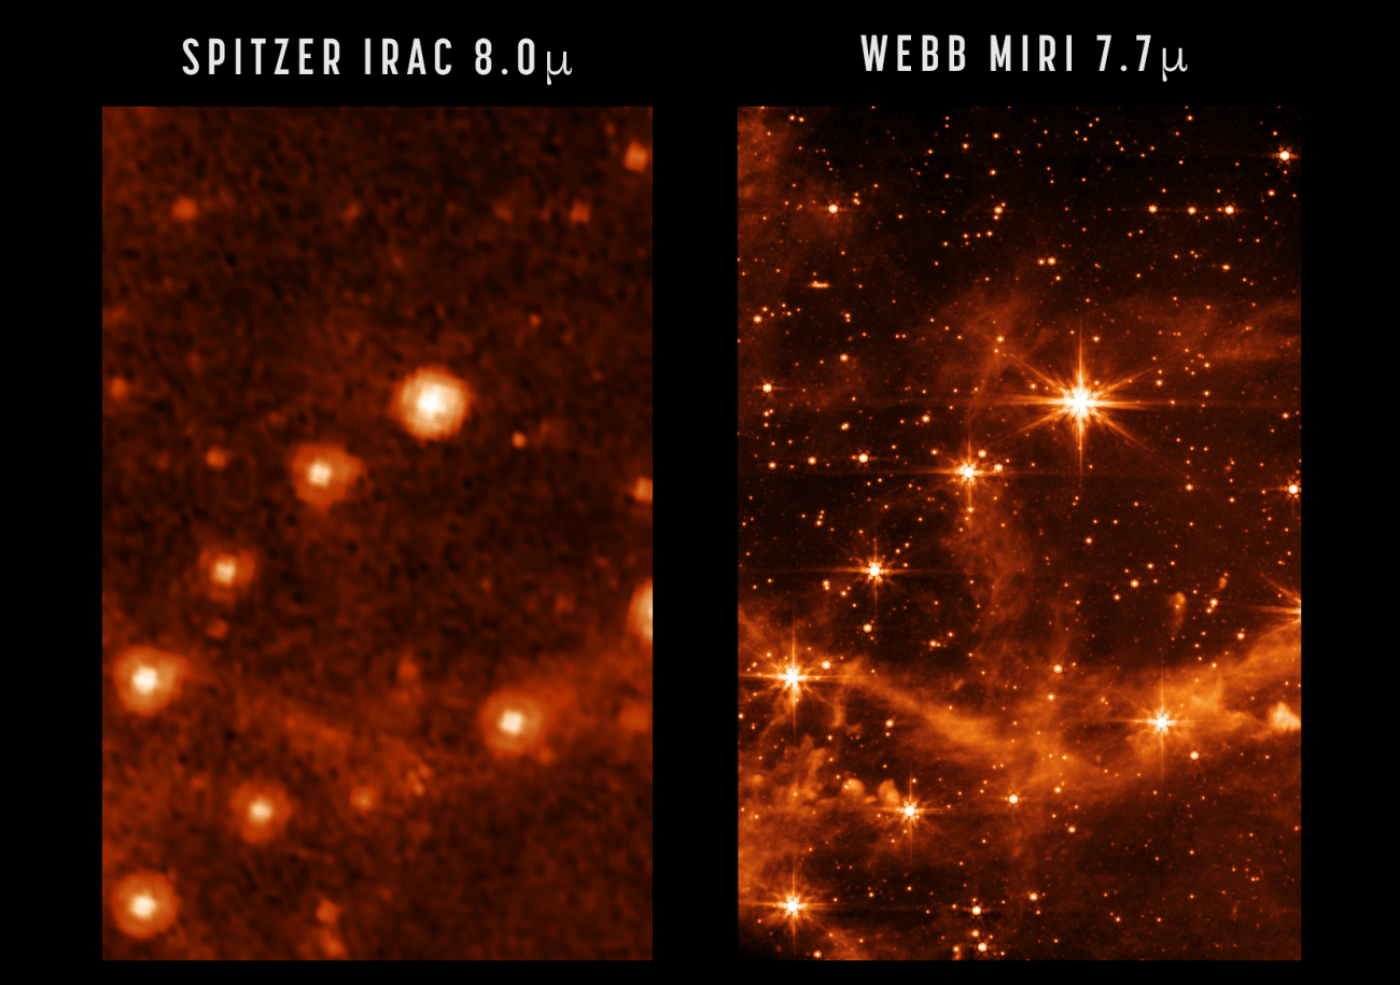 Salto de gigante en la visión infrarroja del universo gracias al Webb